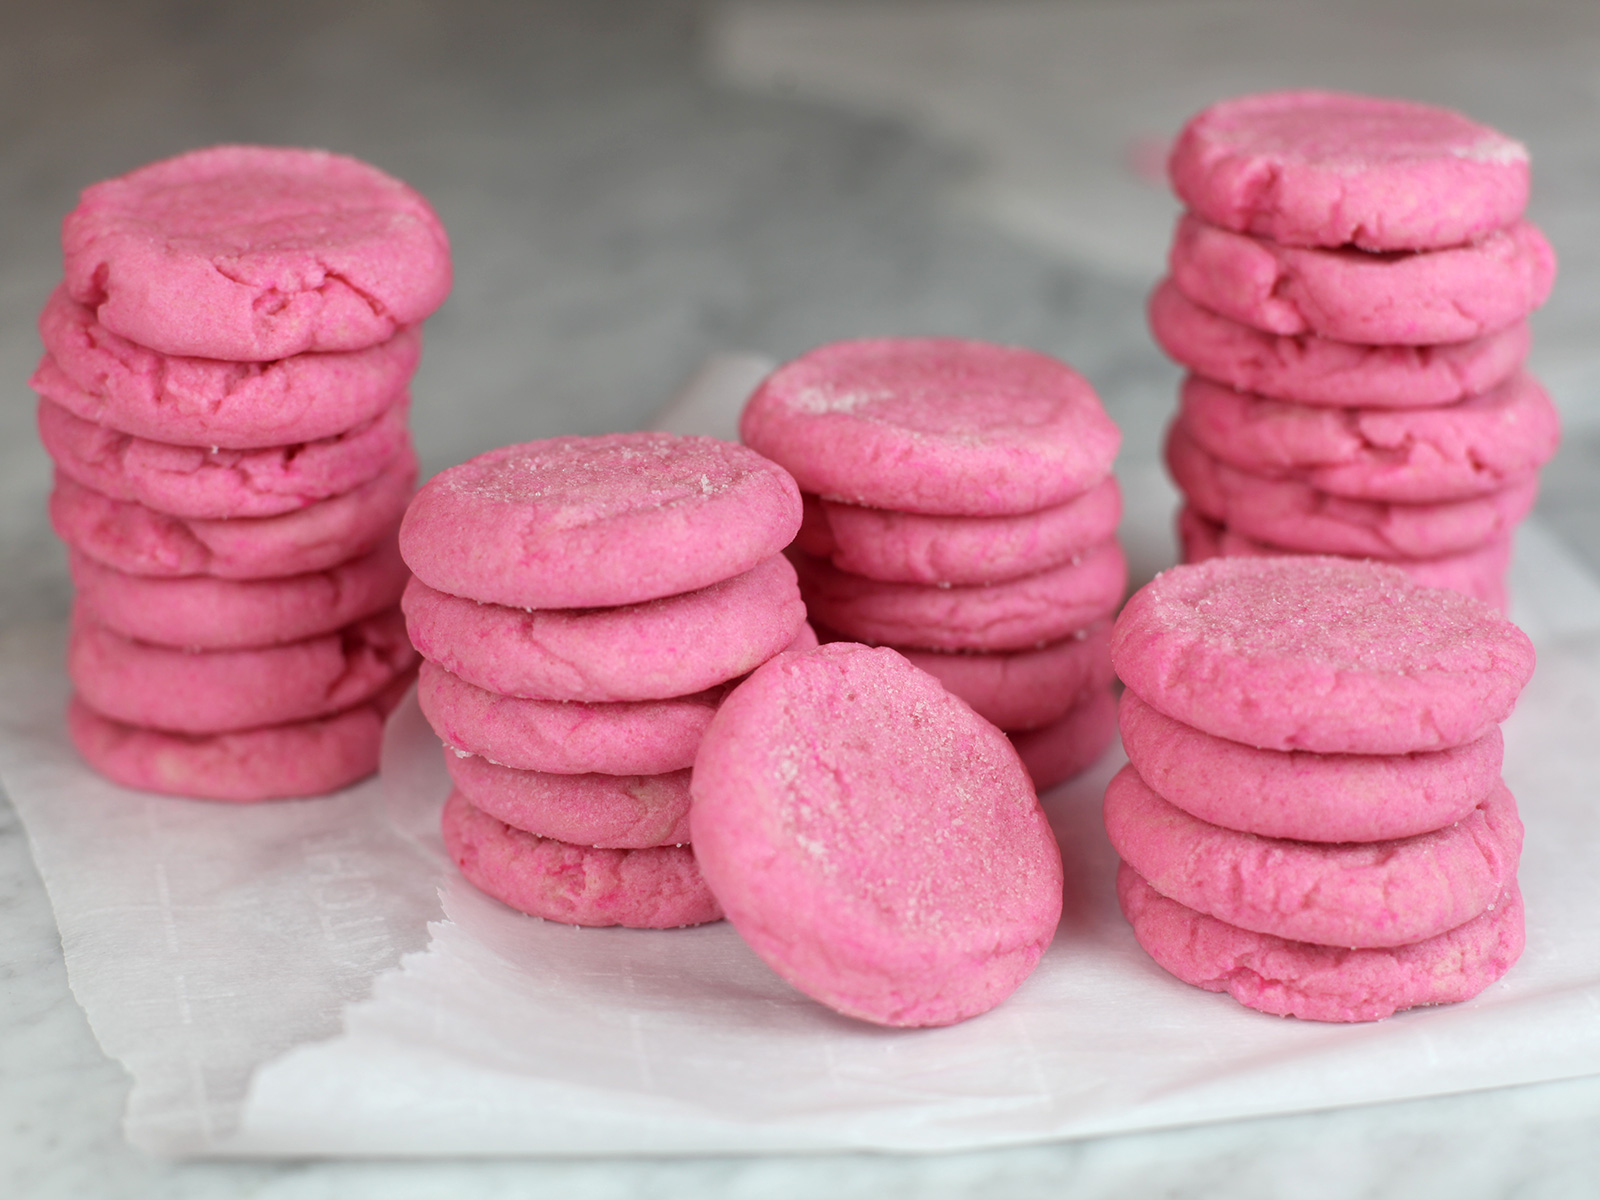 Soft Pink Sugar Cookies